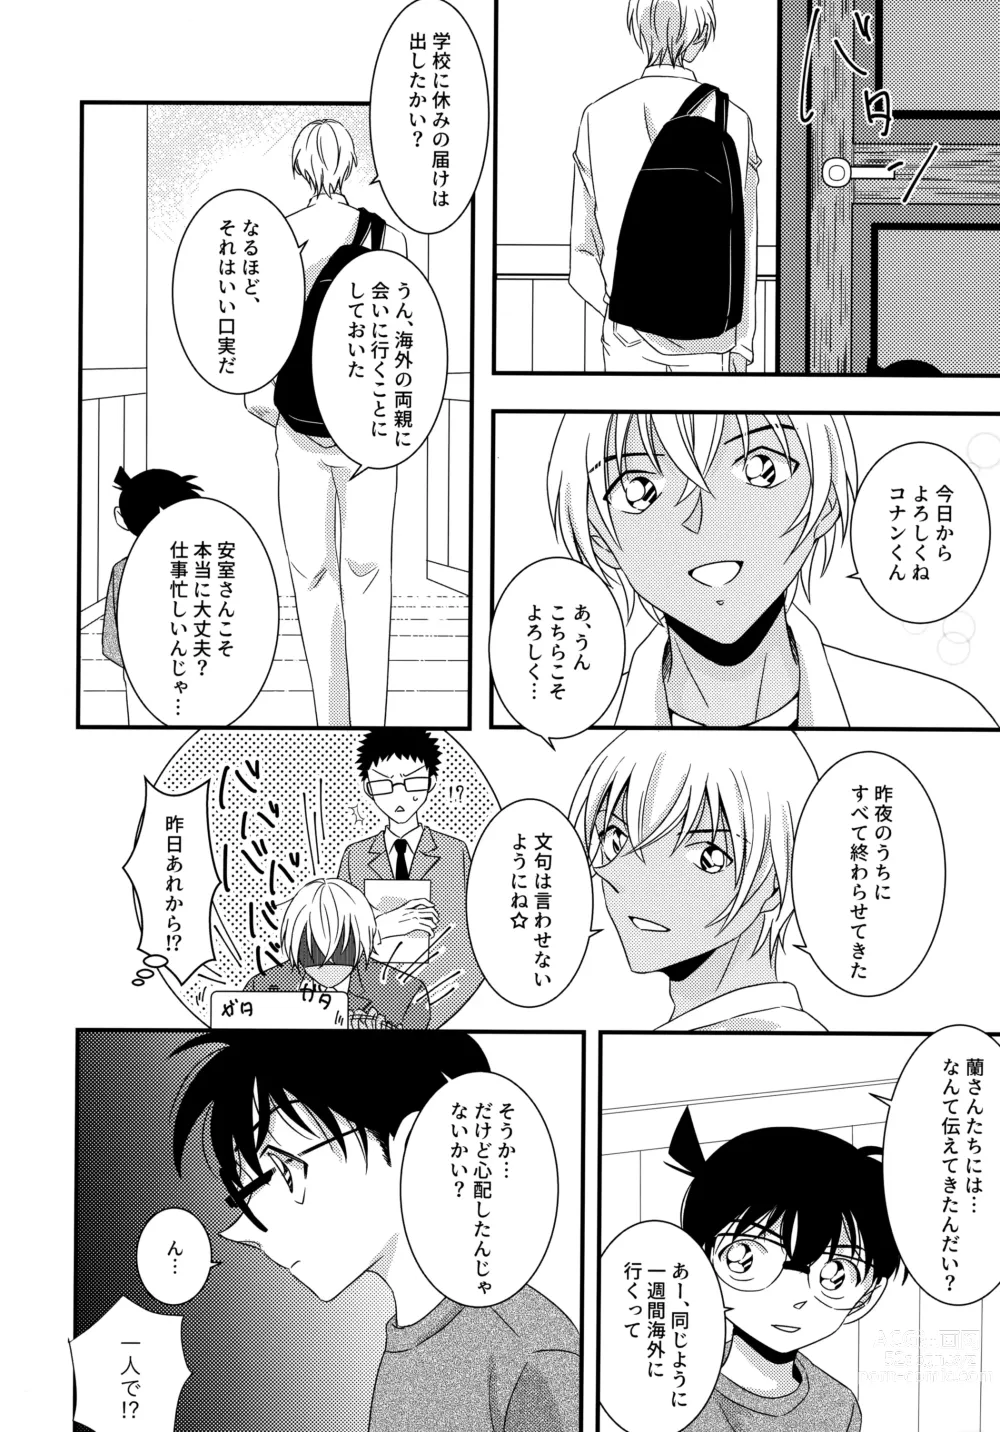 Page 5 of doujinshi Kimi to Himitsu no 7 Kakan